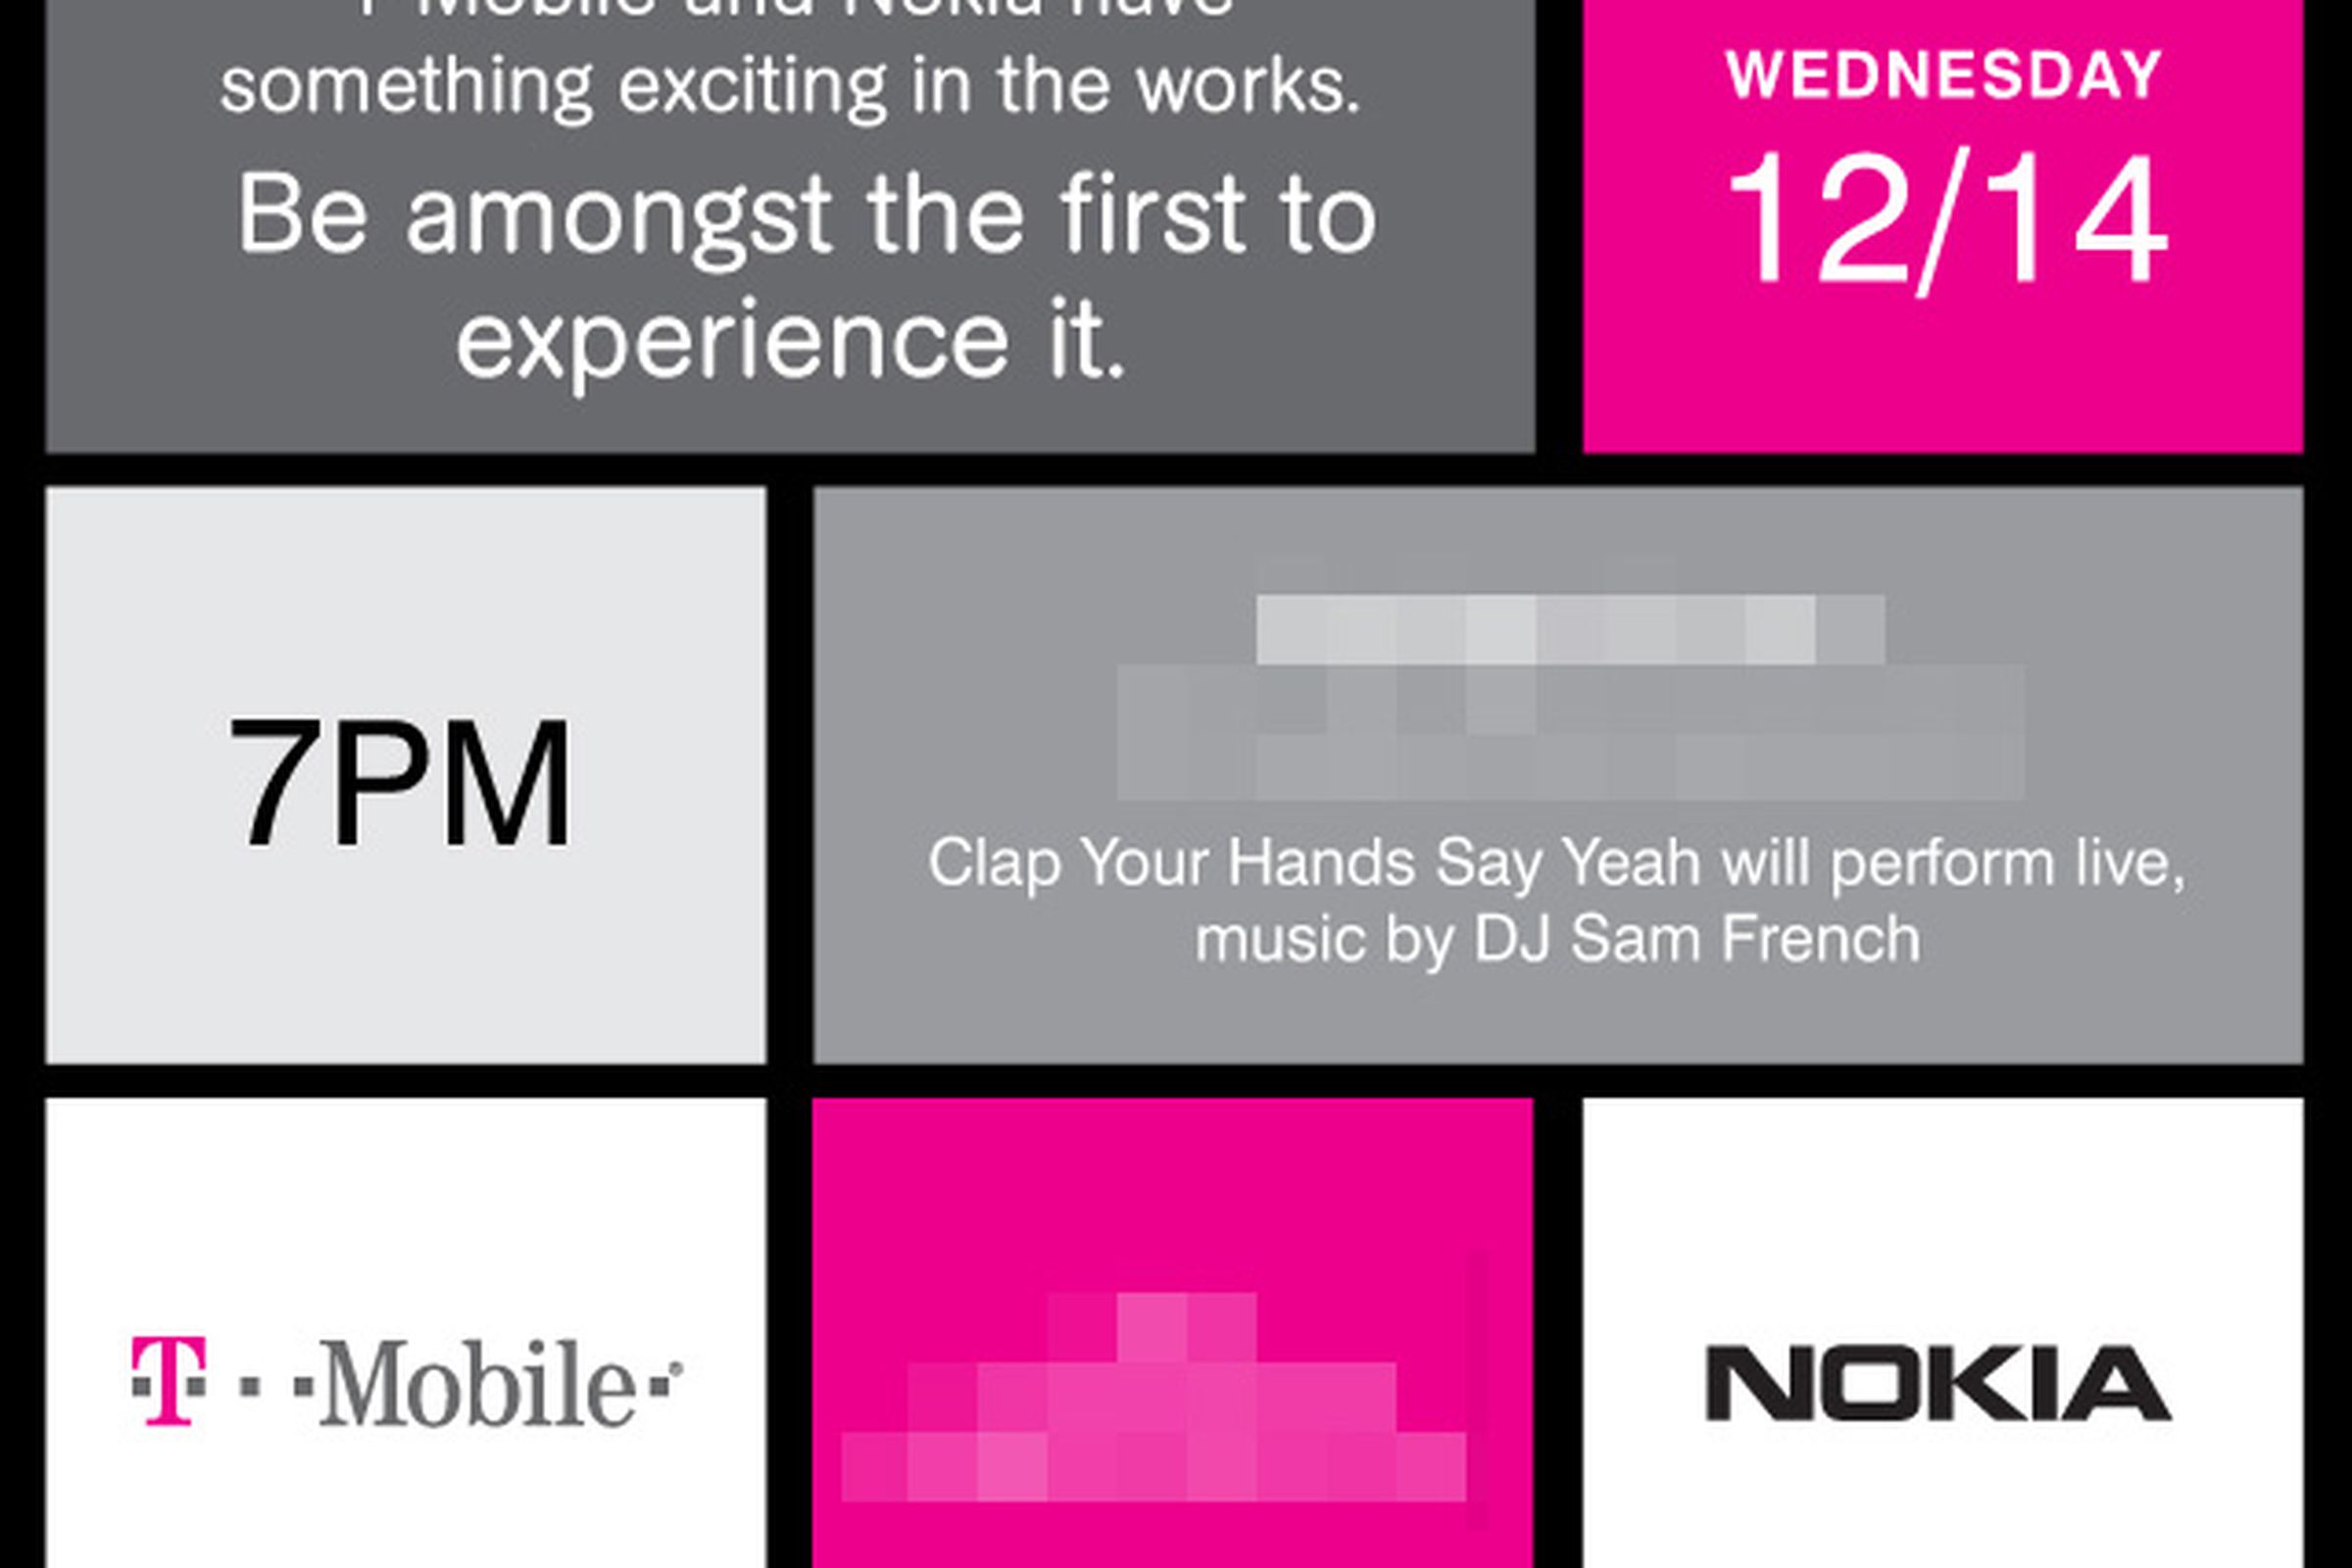 Nokia T-Mobile invite